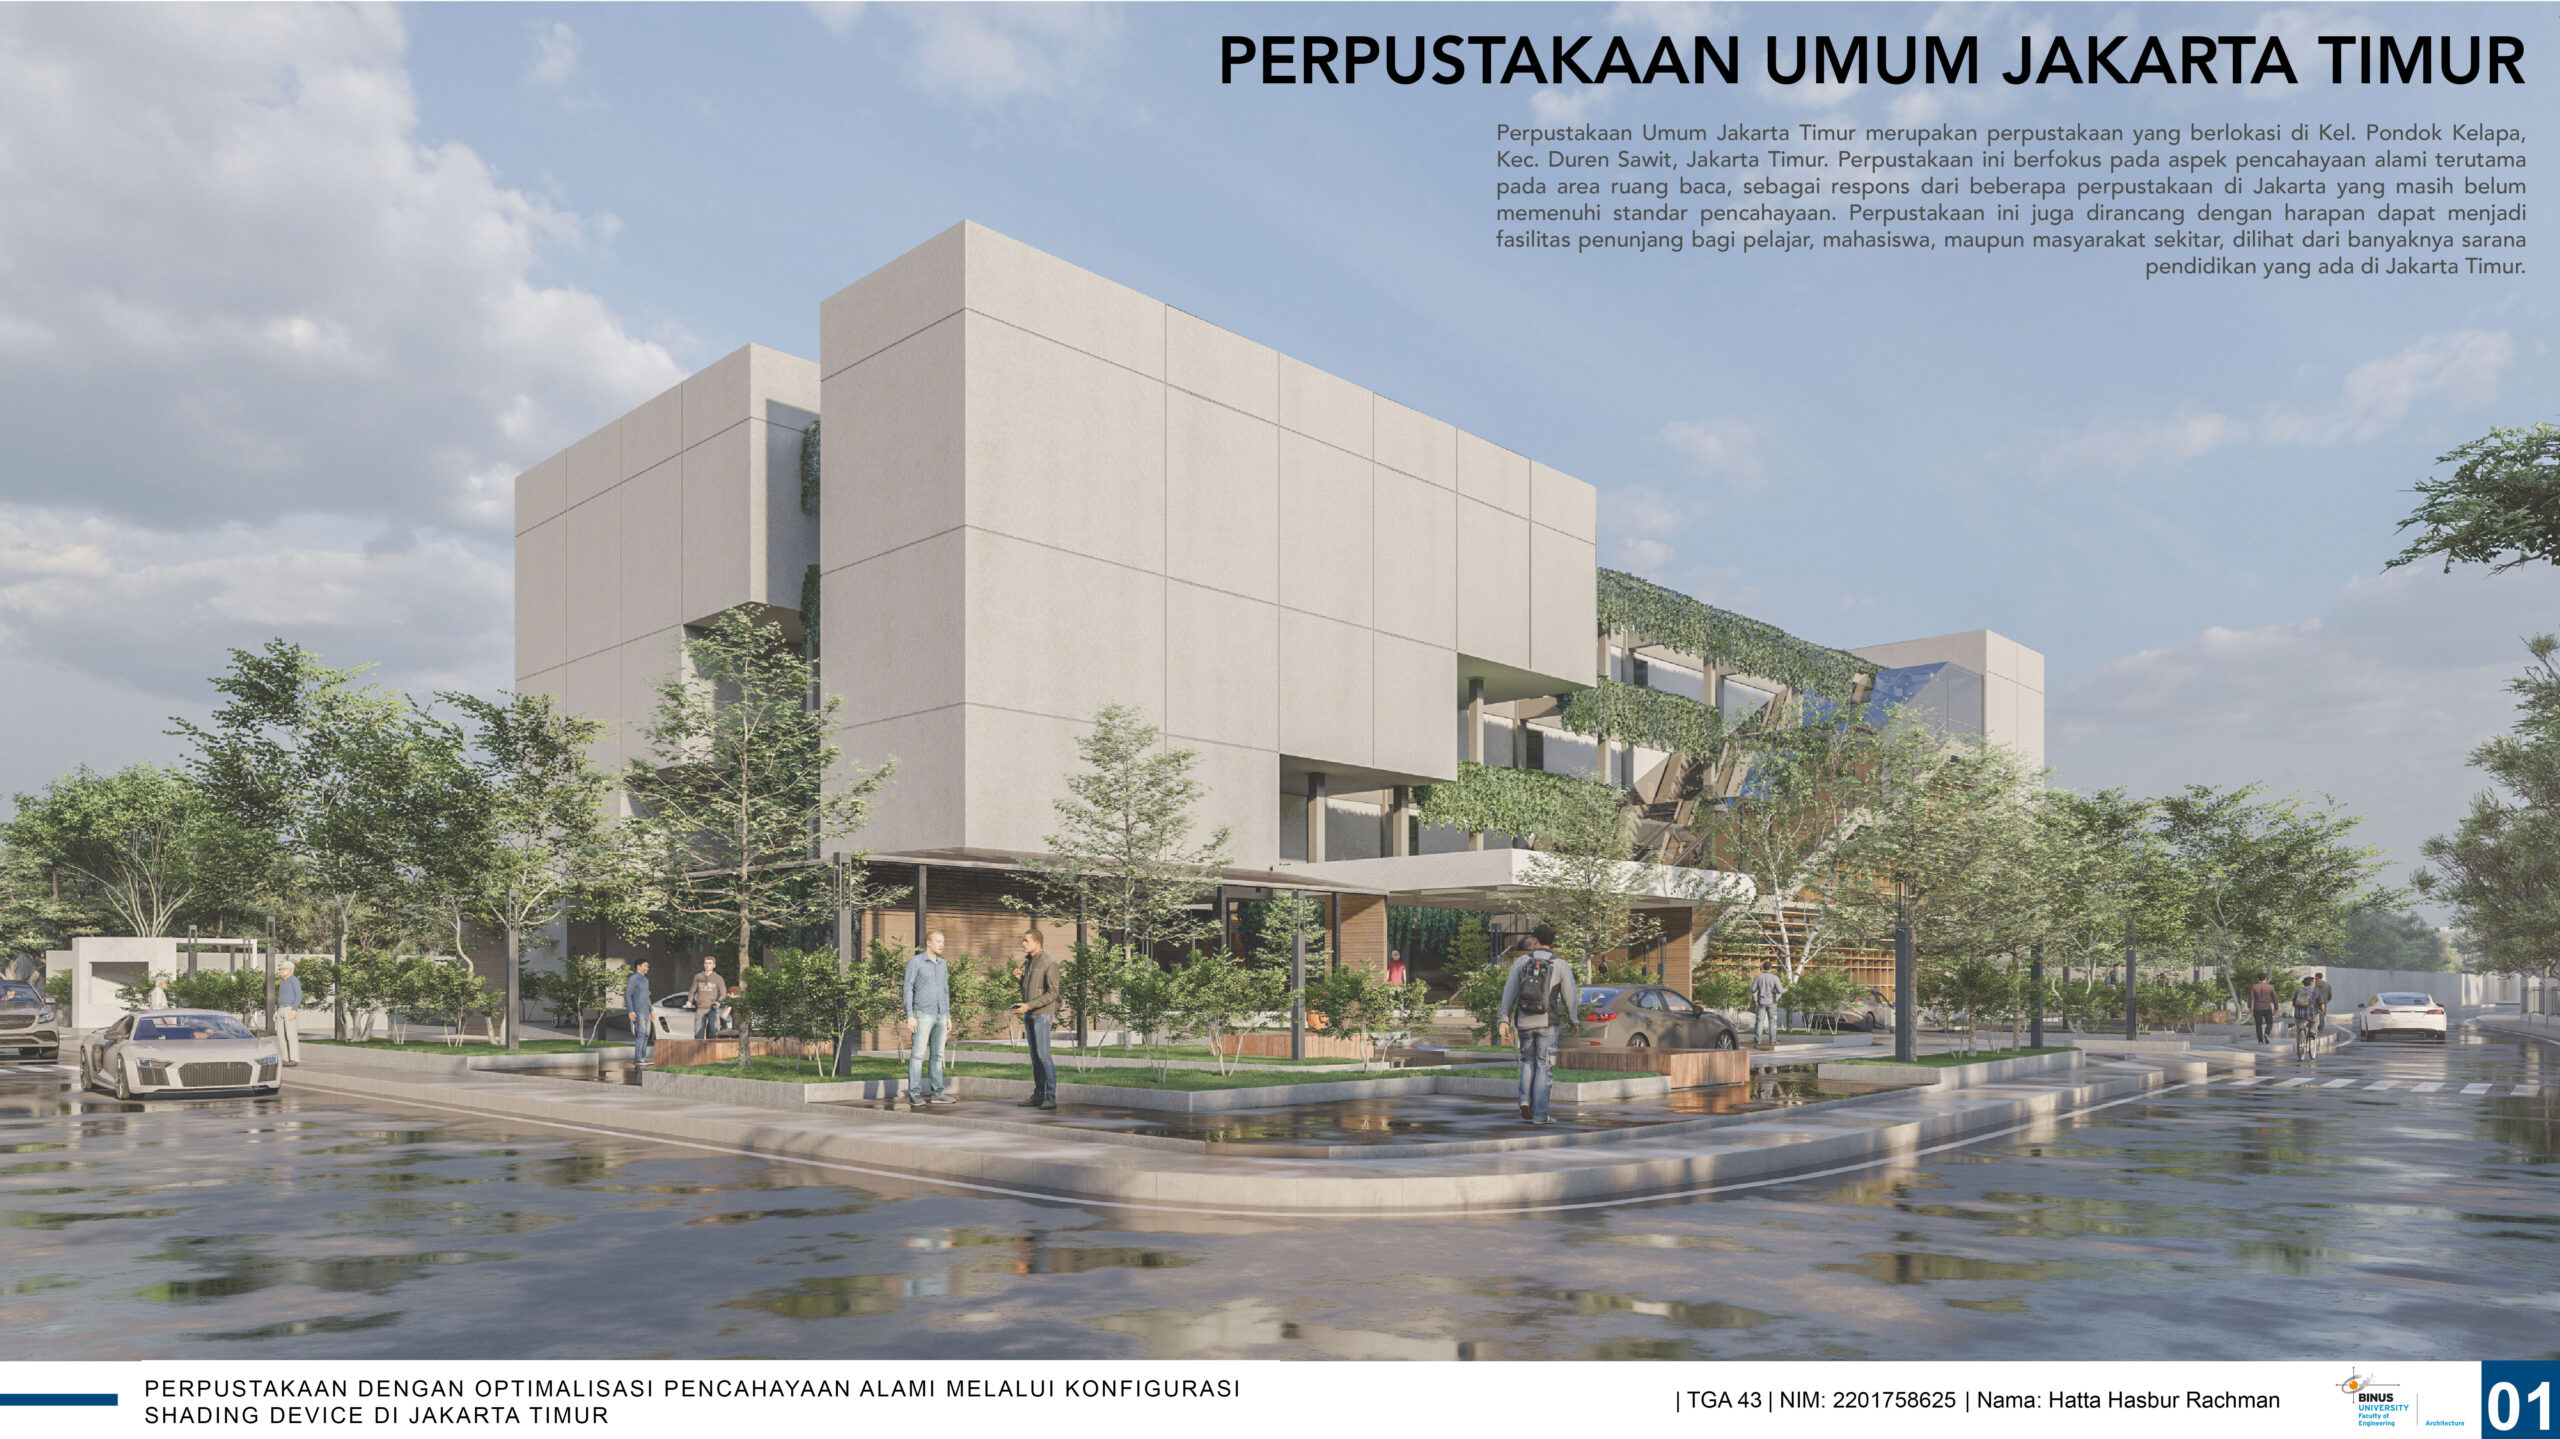 Perpustakaan Dengan Optimalisasi Pencahayaan Alami Melalui Konfigurasi Shading Device di Jakarta Timur